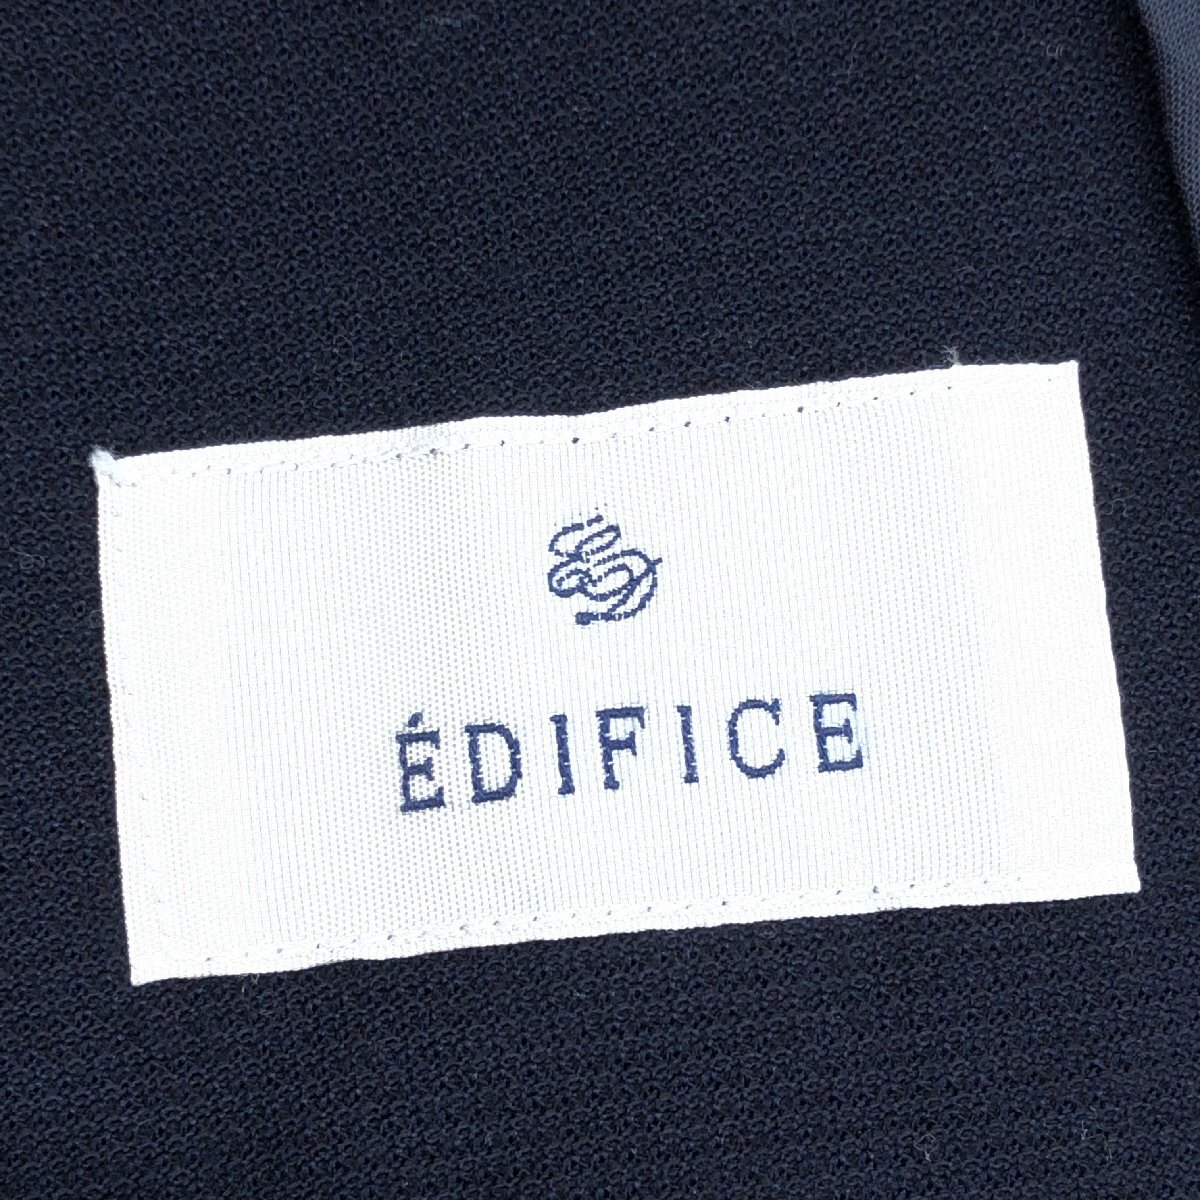 ●EDIFICE エディフィス 2B ジャージージャケット 44(S) 濃紺 ネイビーサマージャケット テーラードジャケット 春夏用 国内正規品 メンズ_画像3